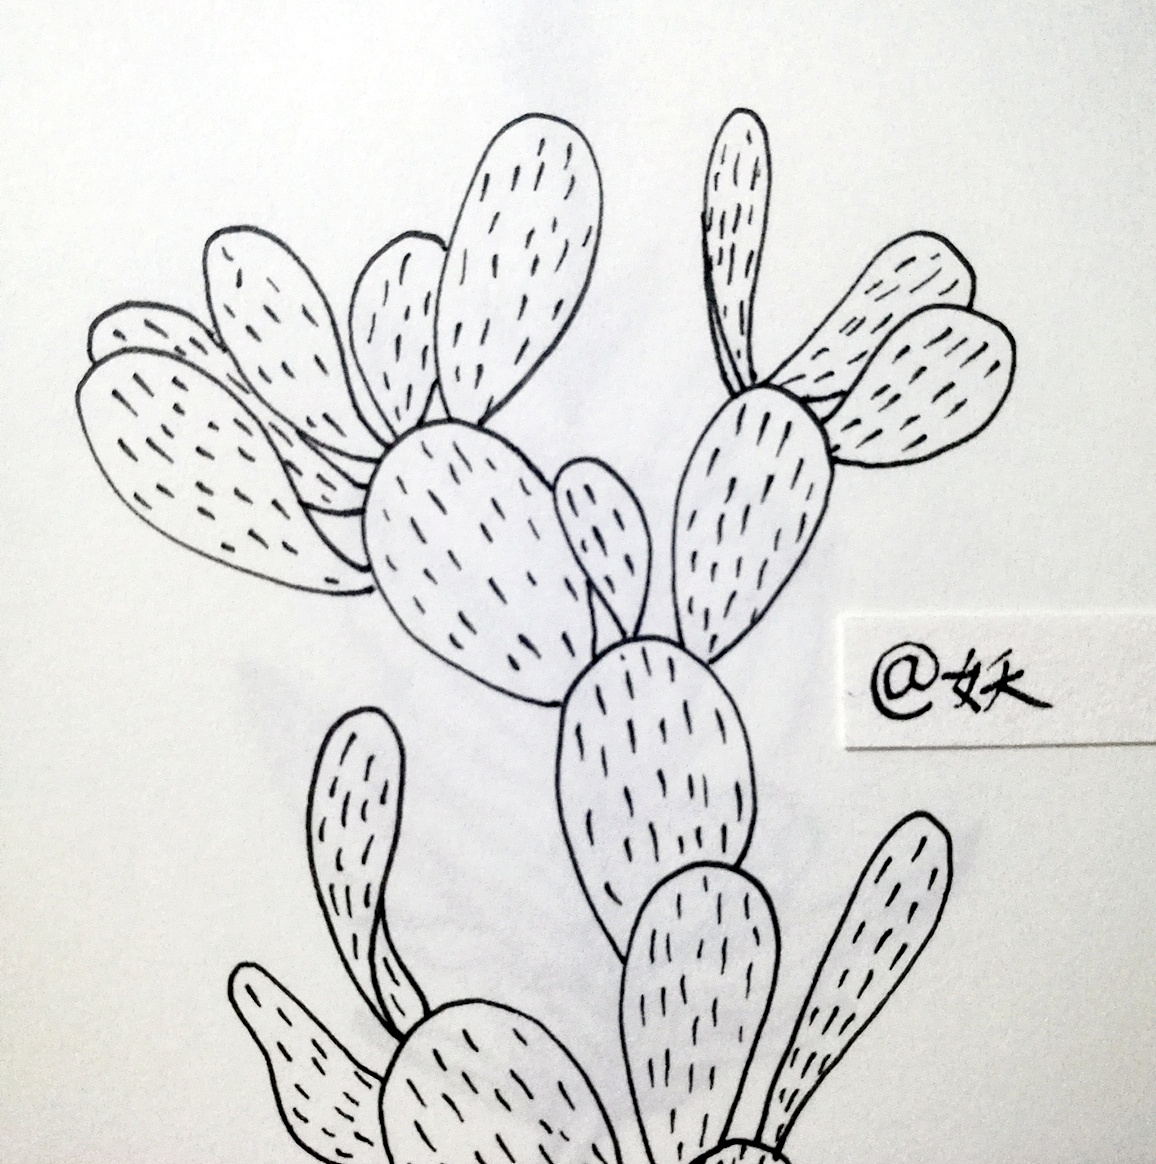 勾线笔画的简单植物画图片